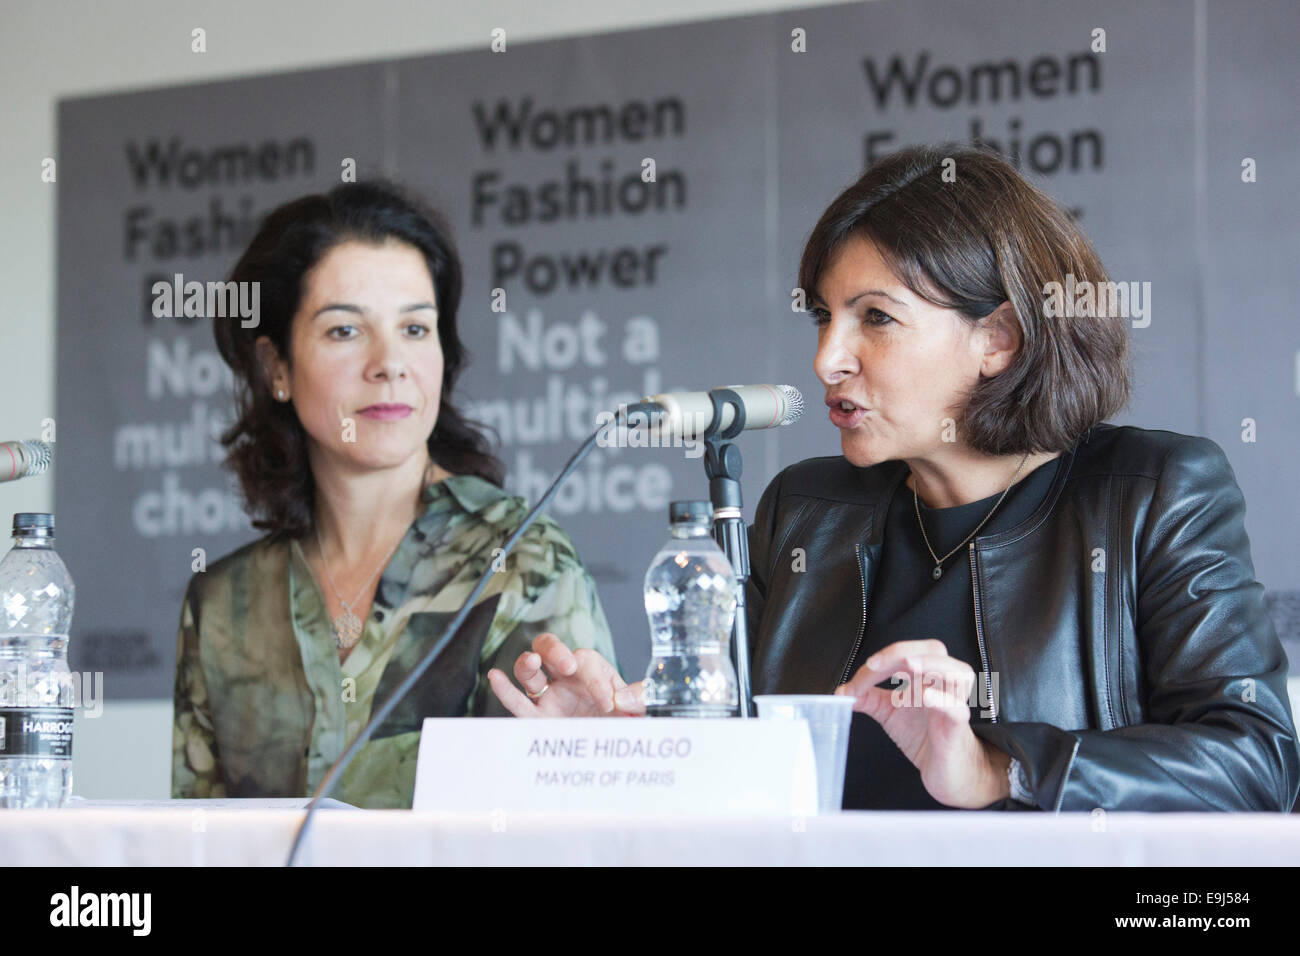 Anne Hidalgo, maire de Paris, s'ouvre l'exposition "Les femmes fashion power' au Design Museum, Londres. avec alice black, gauche Banque D'Images